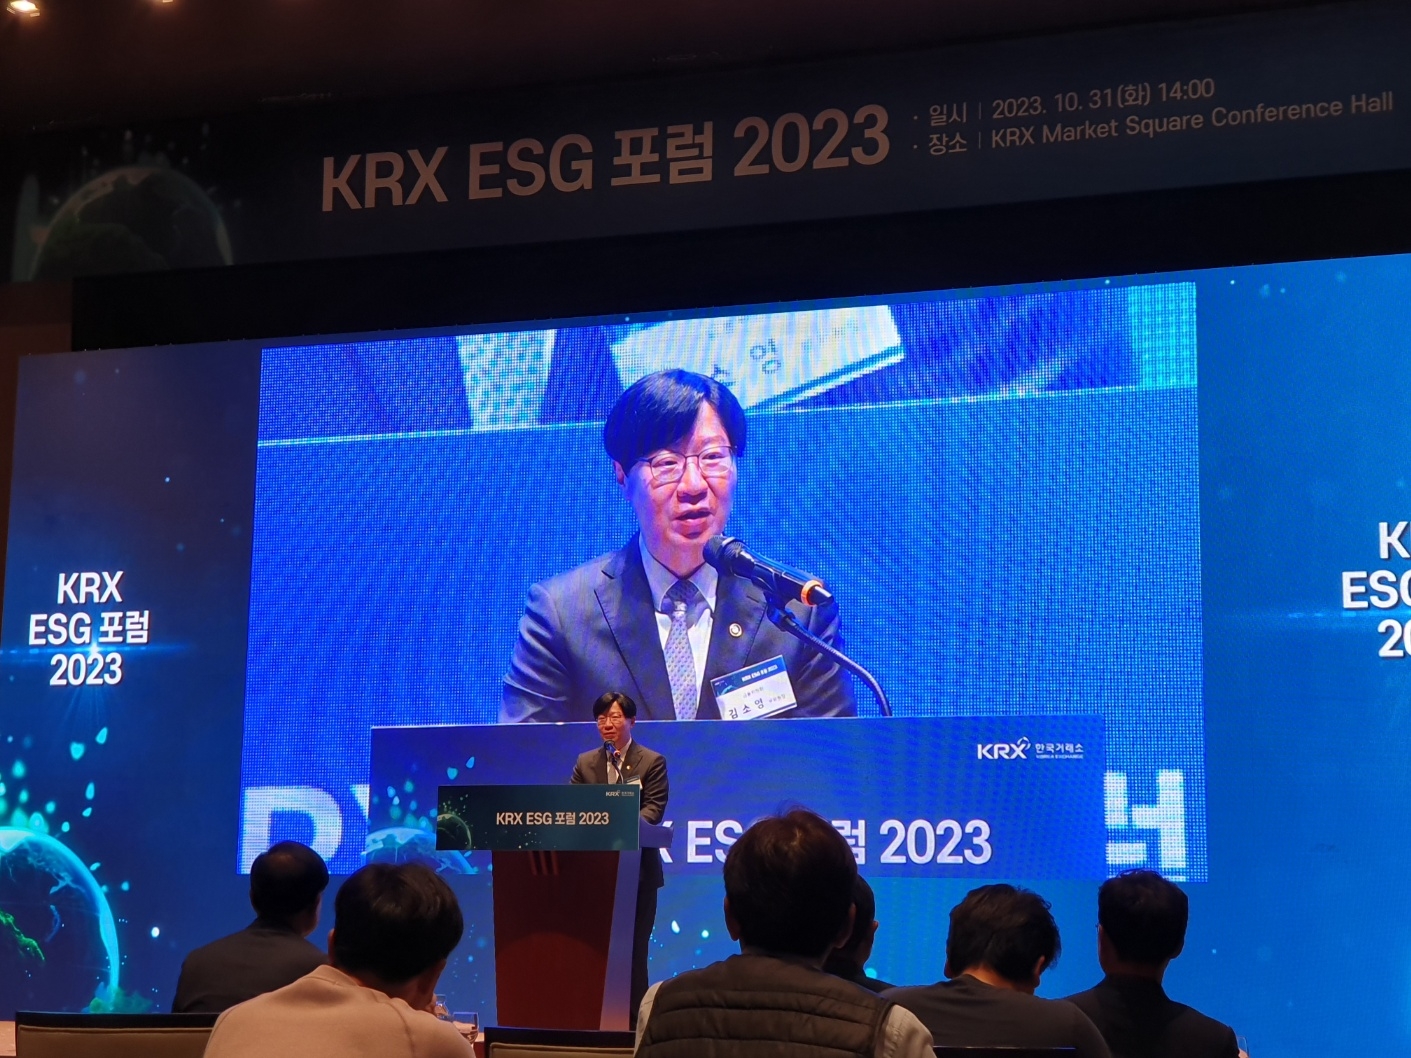 김소영 금융위원회 부위원장은 31일 오후 한국거래소 콘퍼런스홀에서 열린 '한국거래소 KRX ESG 포럼 2023'에서 축사를 하고 있다. / 사진= 한국금융신문(2023.10.31)